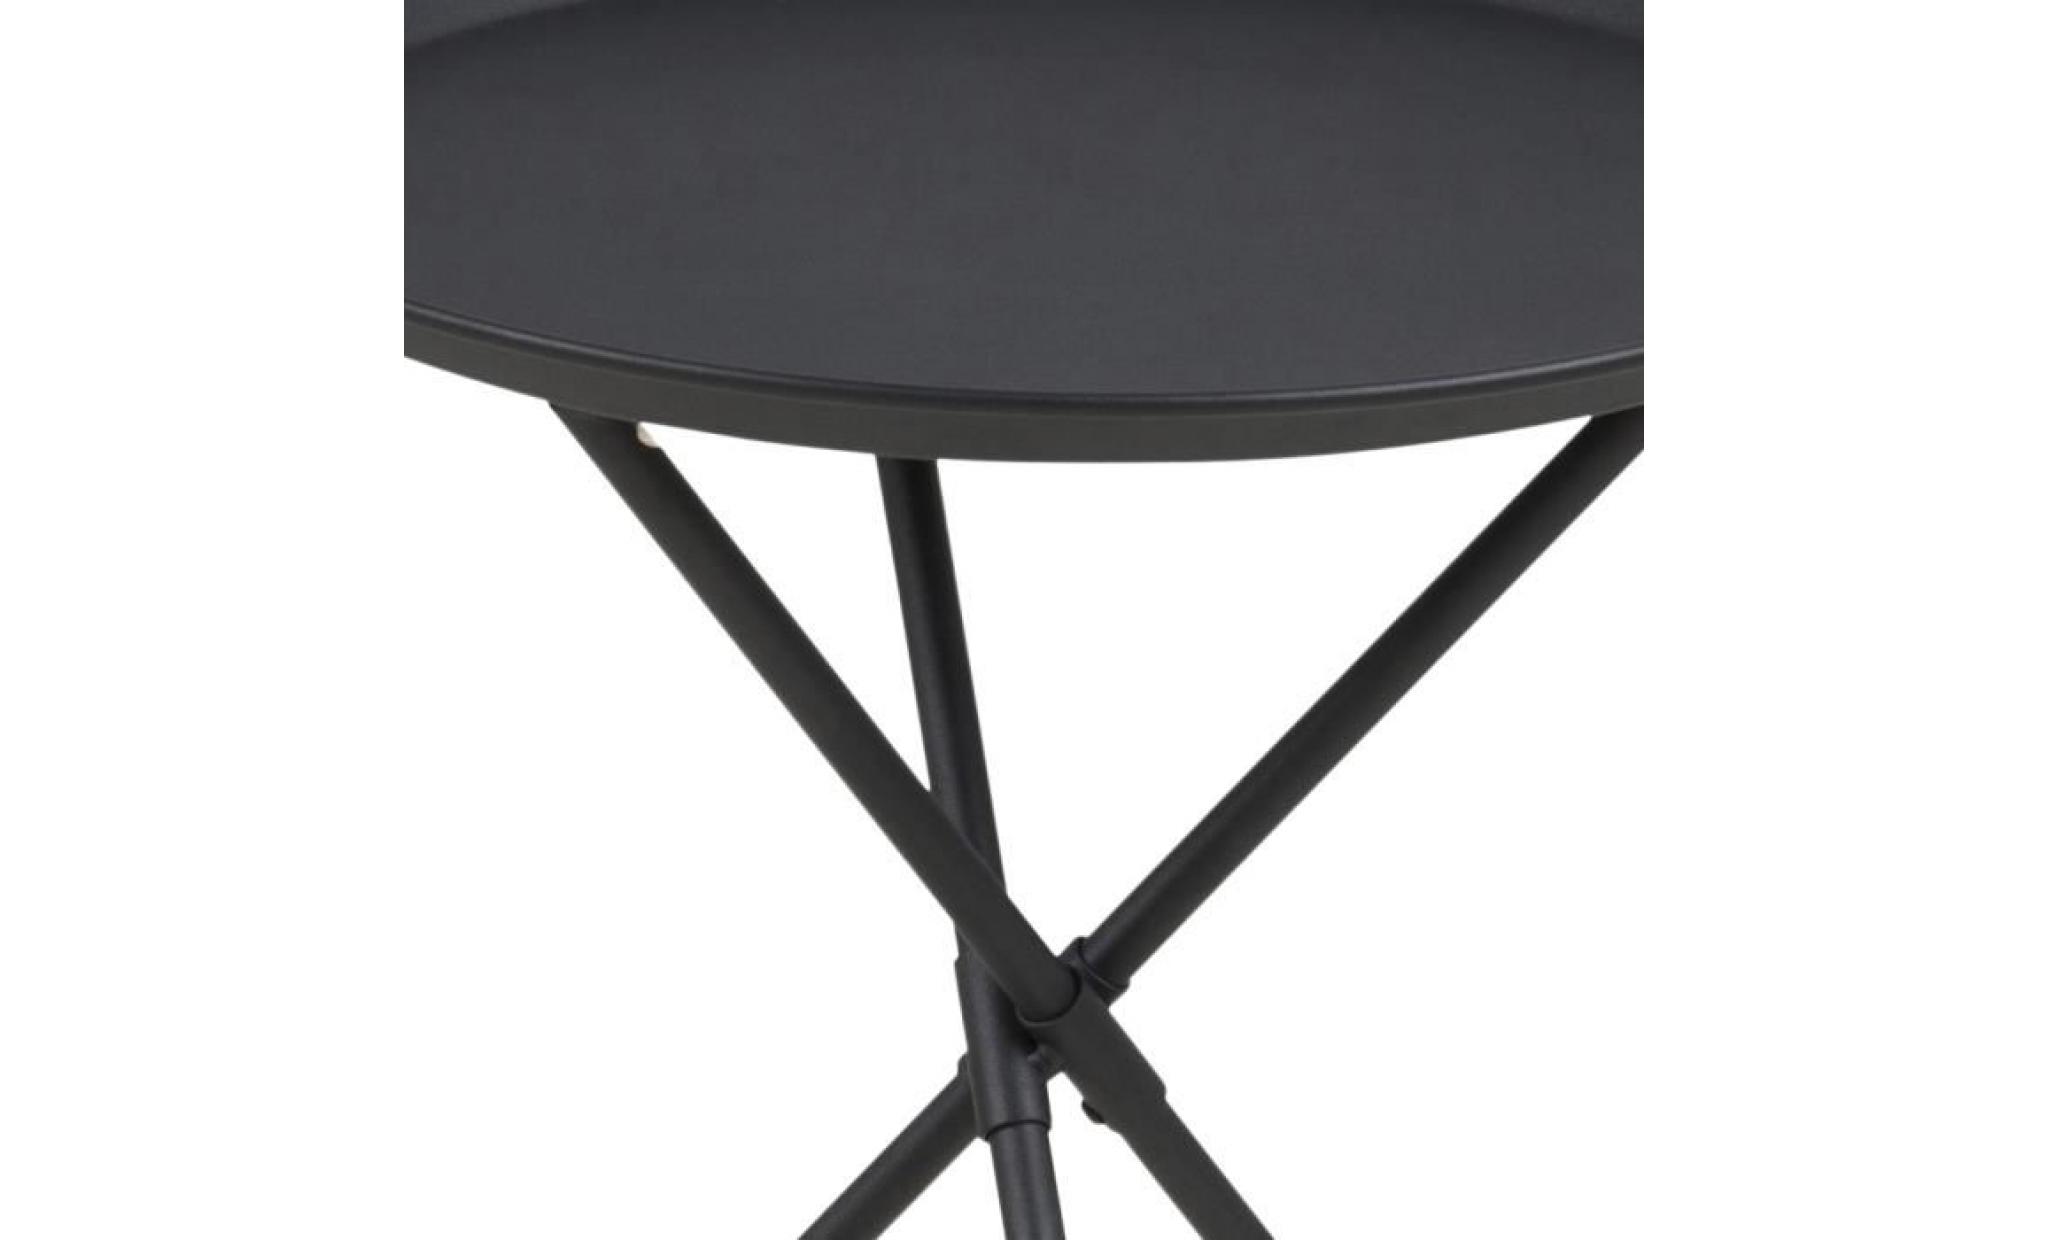 table basse / table d’appoint   sparky   38,5 cm   blanc   métal revêtu de poudre   style scandinave   style industriel pas cher